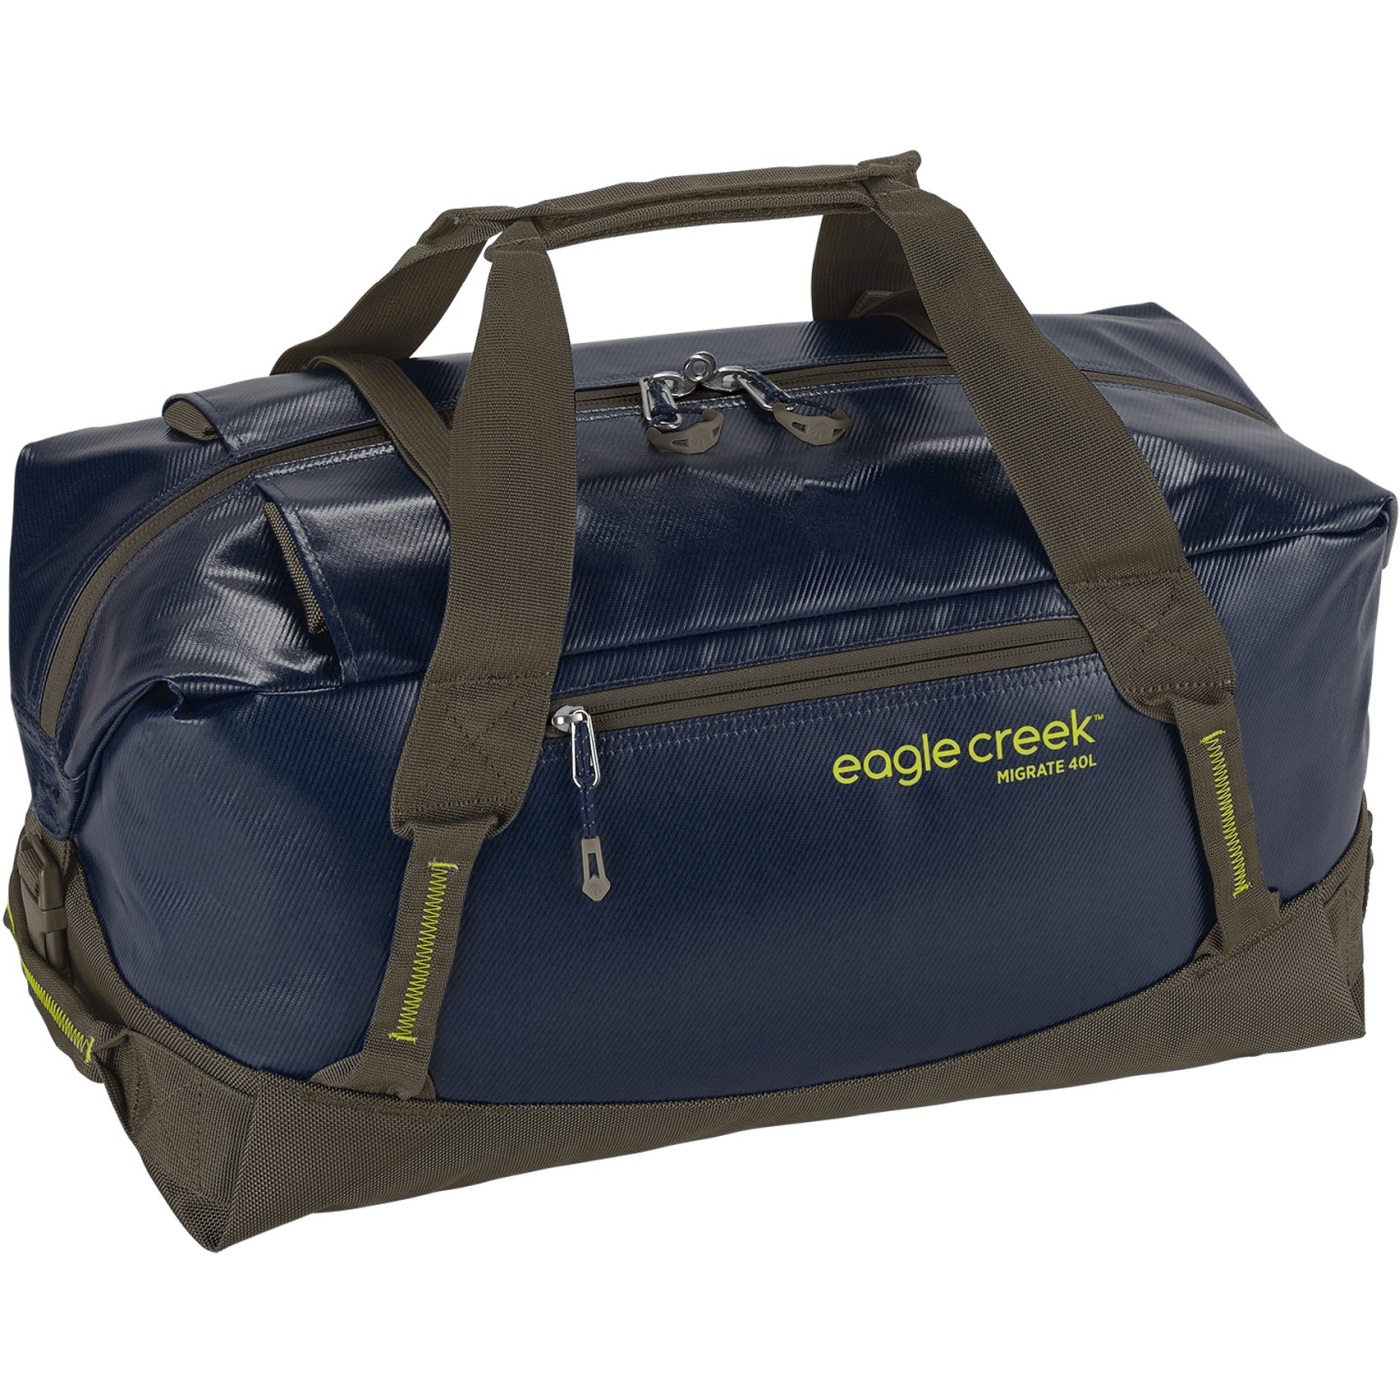 Produktbild von Eagle Creek Migrate Duffel - Reisetasche - 40 L - rush blue